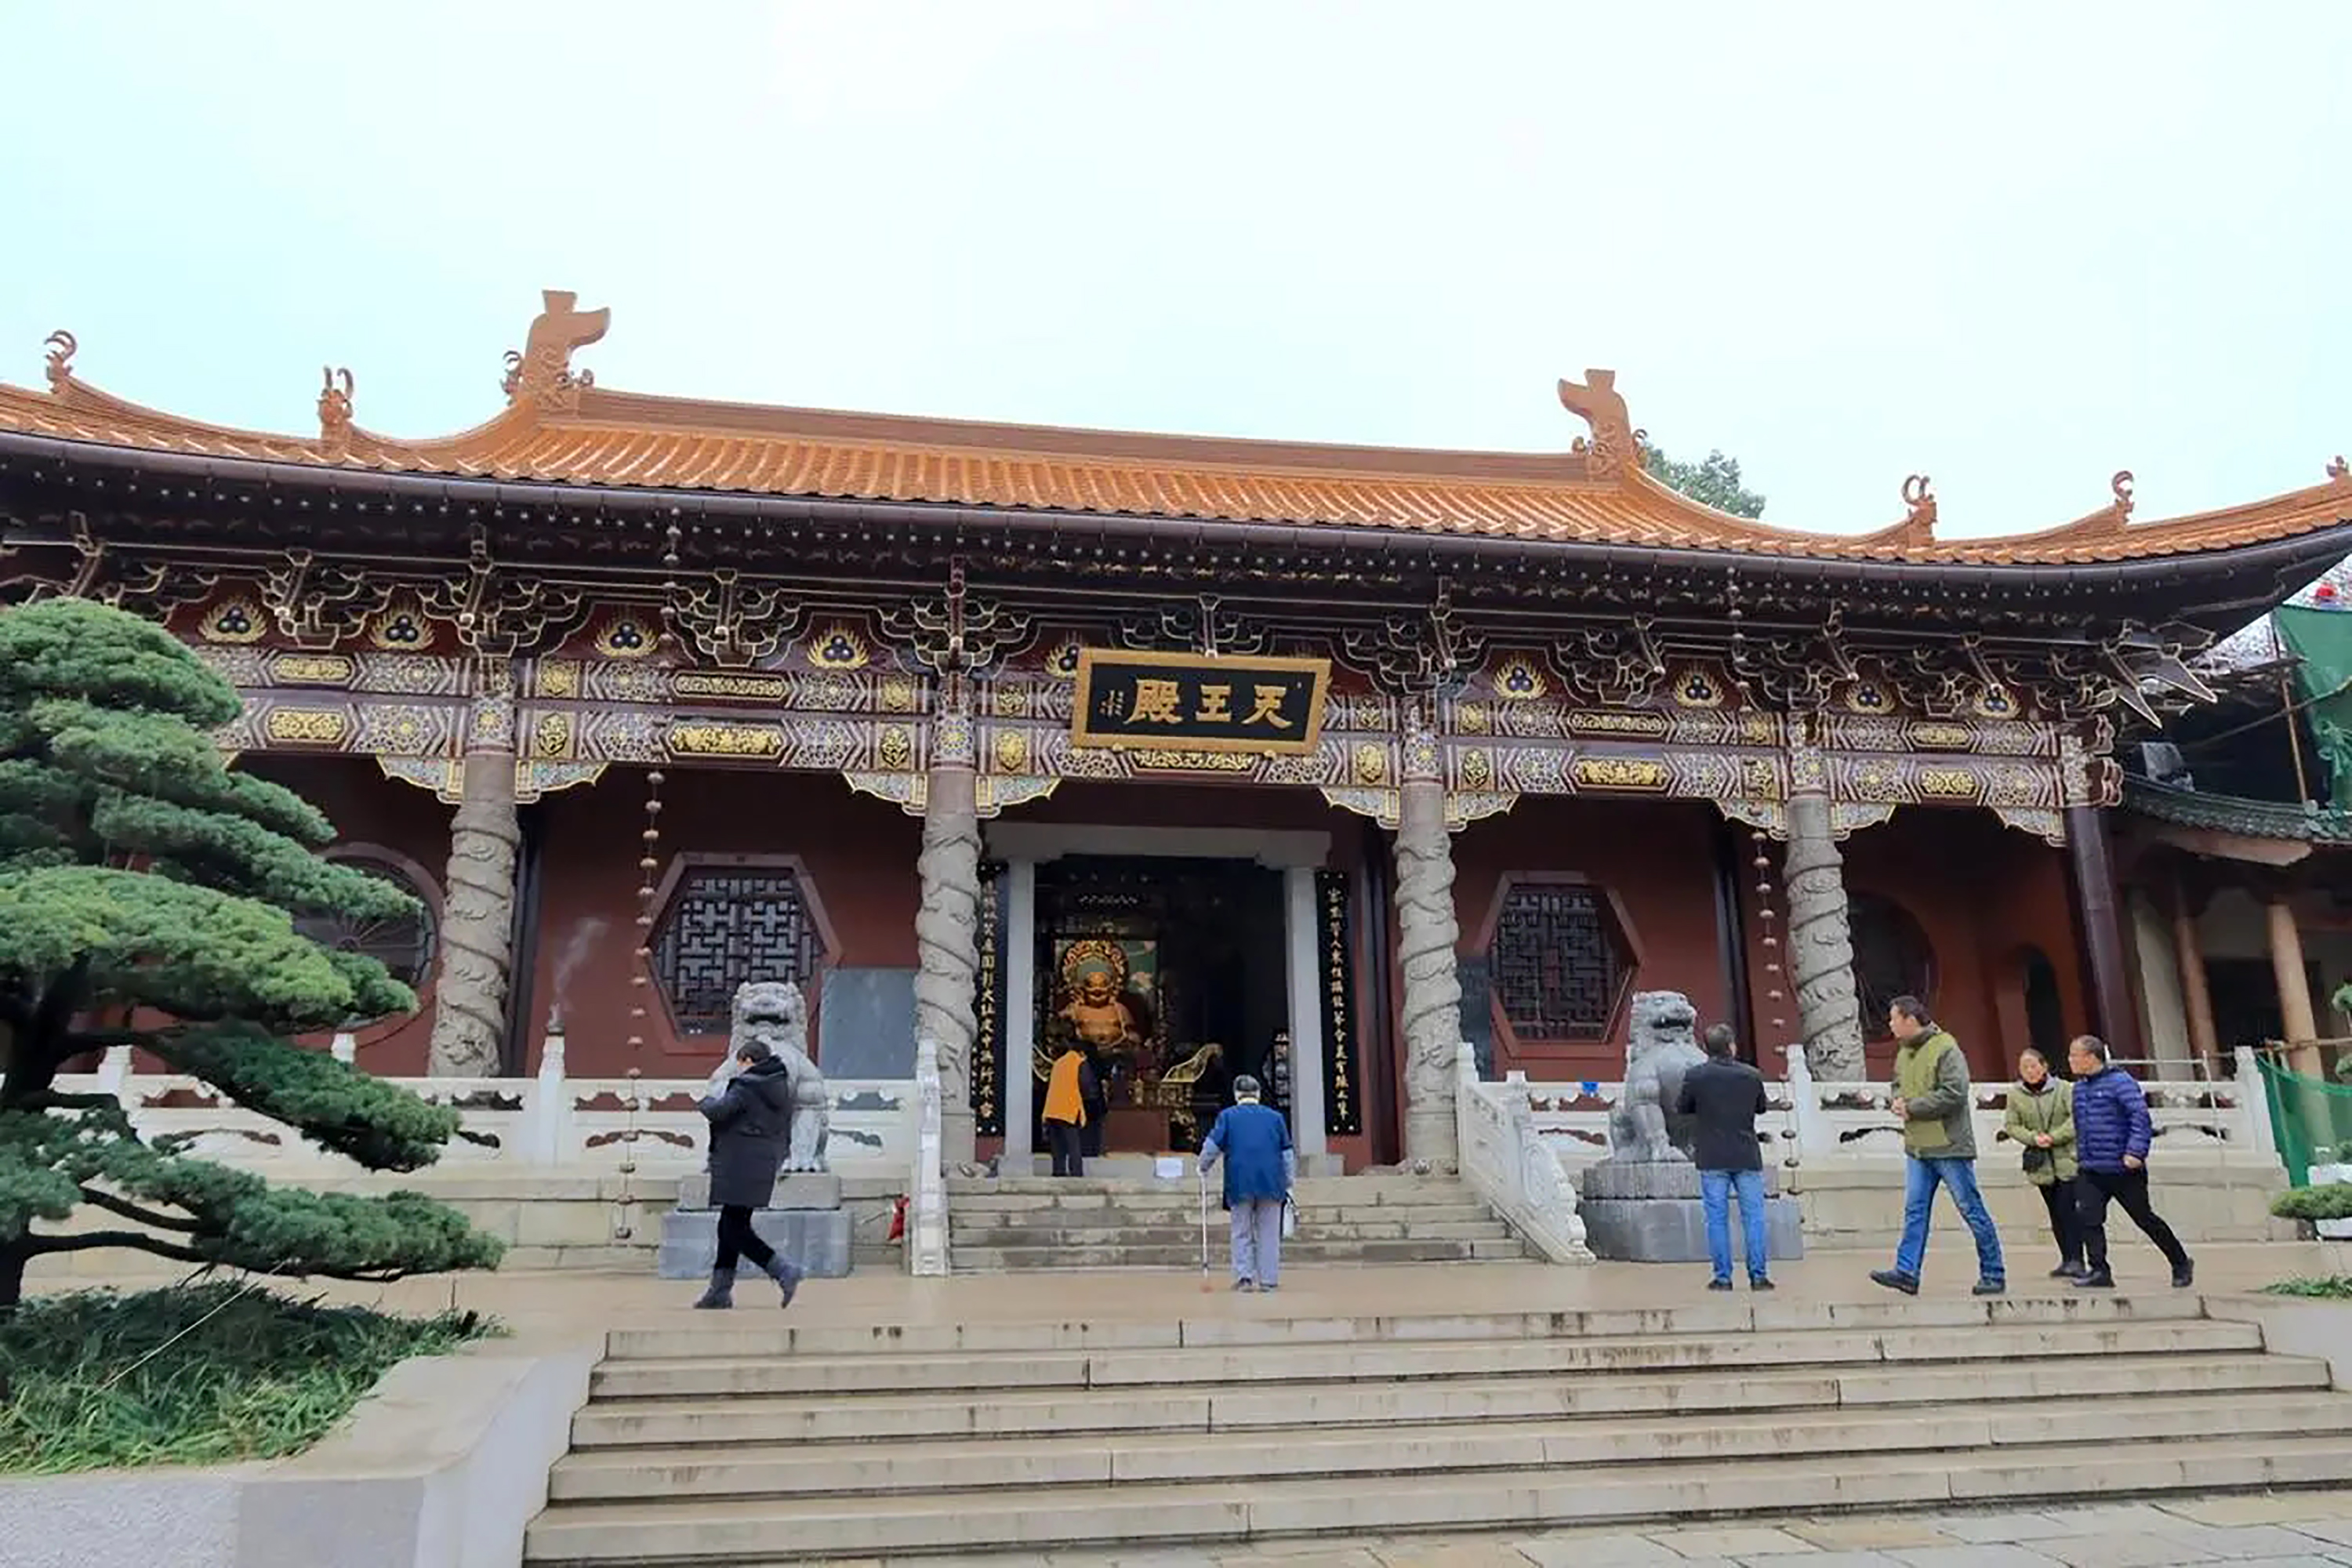 中国佛教有十派，一派为净土宗，庐山东林寺是净土宗的祖庭发祥地